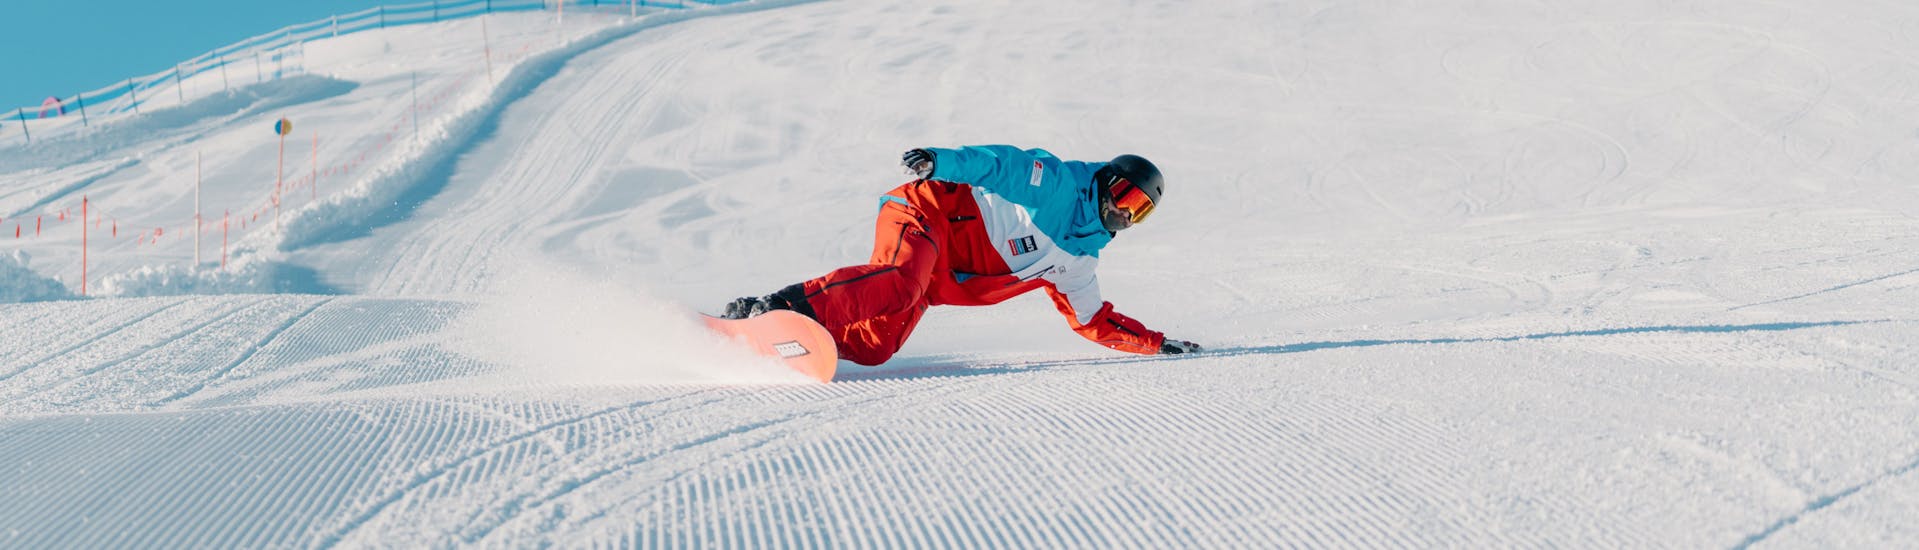 Lezioni private di Snowboard a partire da 6 anni per tutti i livelli con Heli's Skischule Saalbach-Hinterglemm.